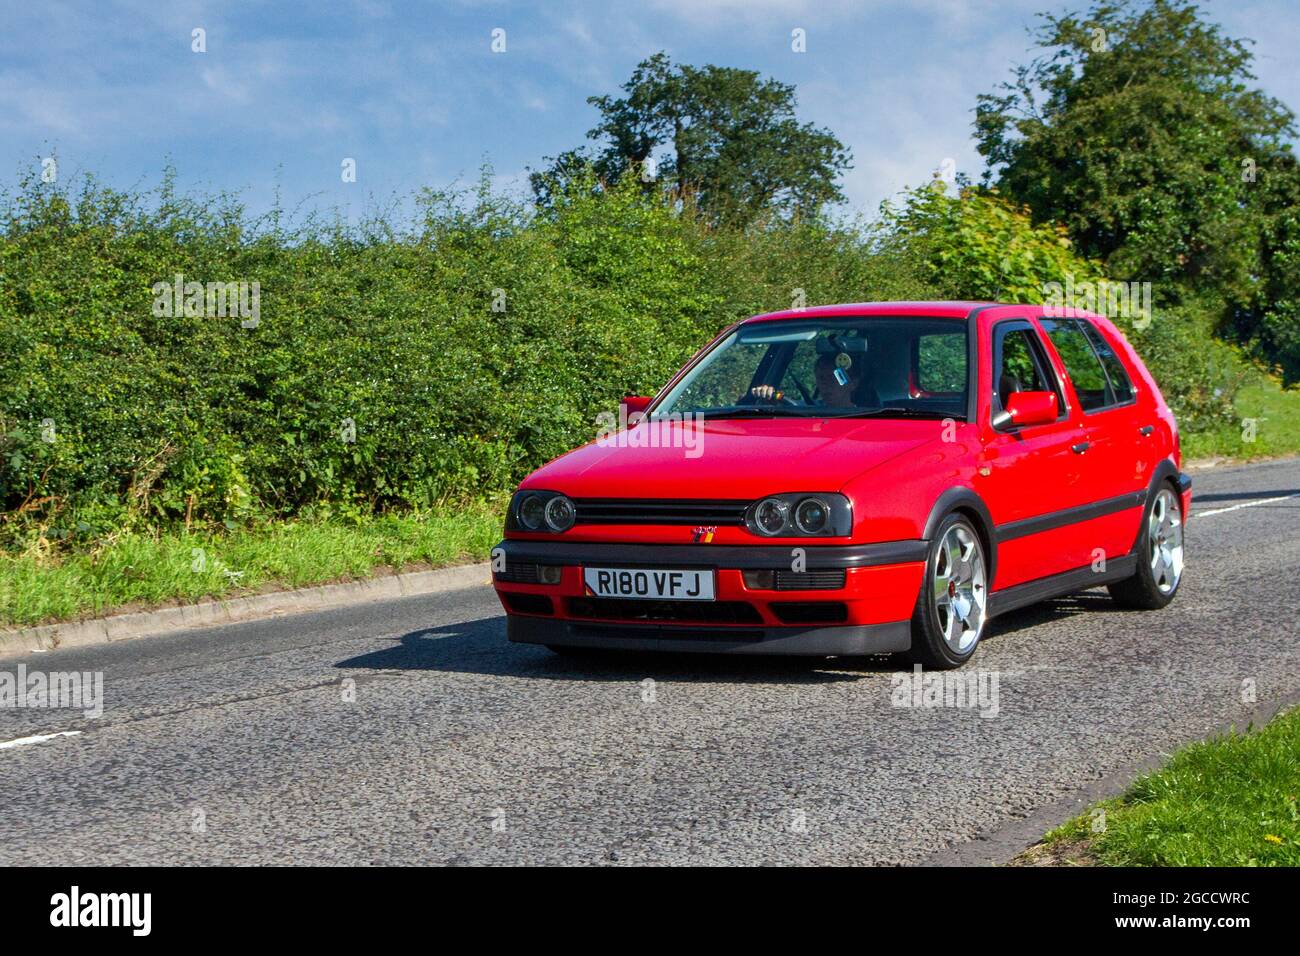 1998 90s années quatre-vingt-dix rouge VW Volkswagen GTI manuelle 5 vitesses 4dr 1984 cc berline essence en route vers Capesthorne Hall Classic de juillet spectacle de voiture, Cheshire, Royaume-Uni Banque D'Images